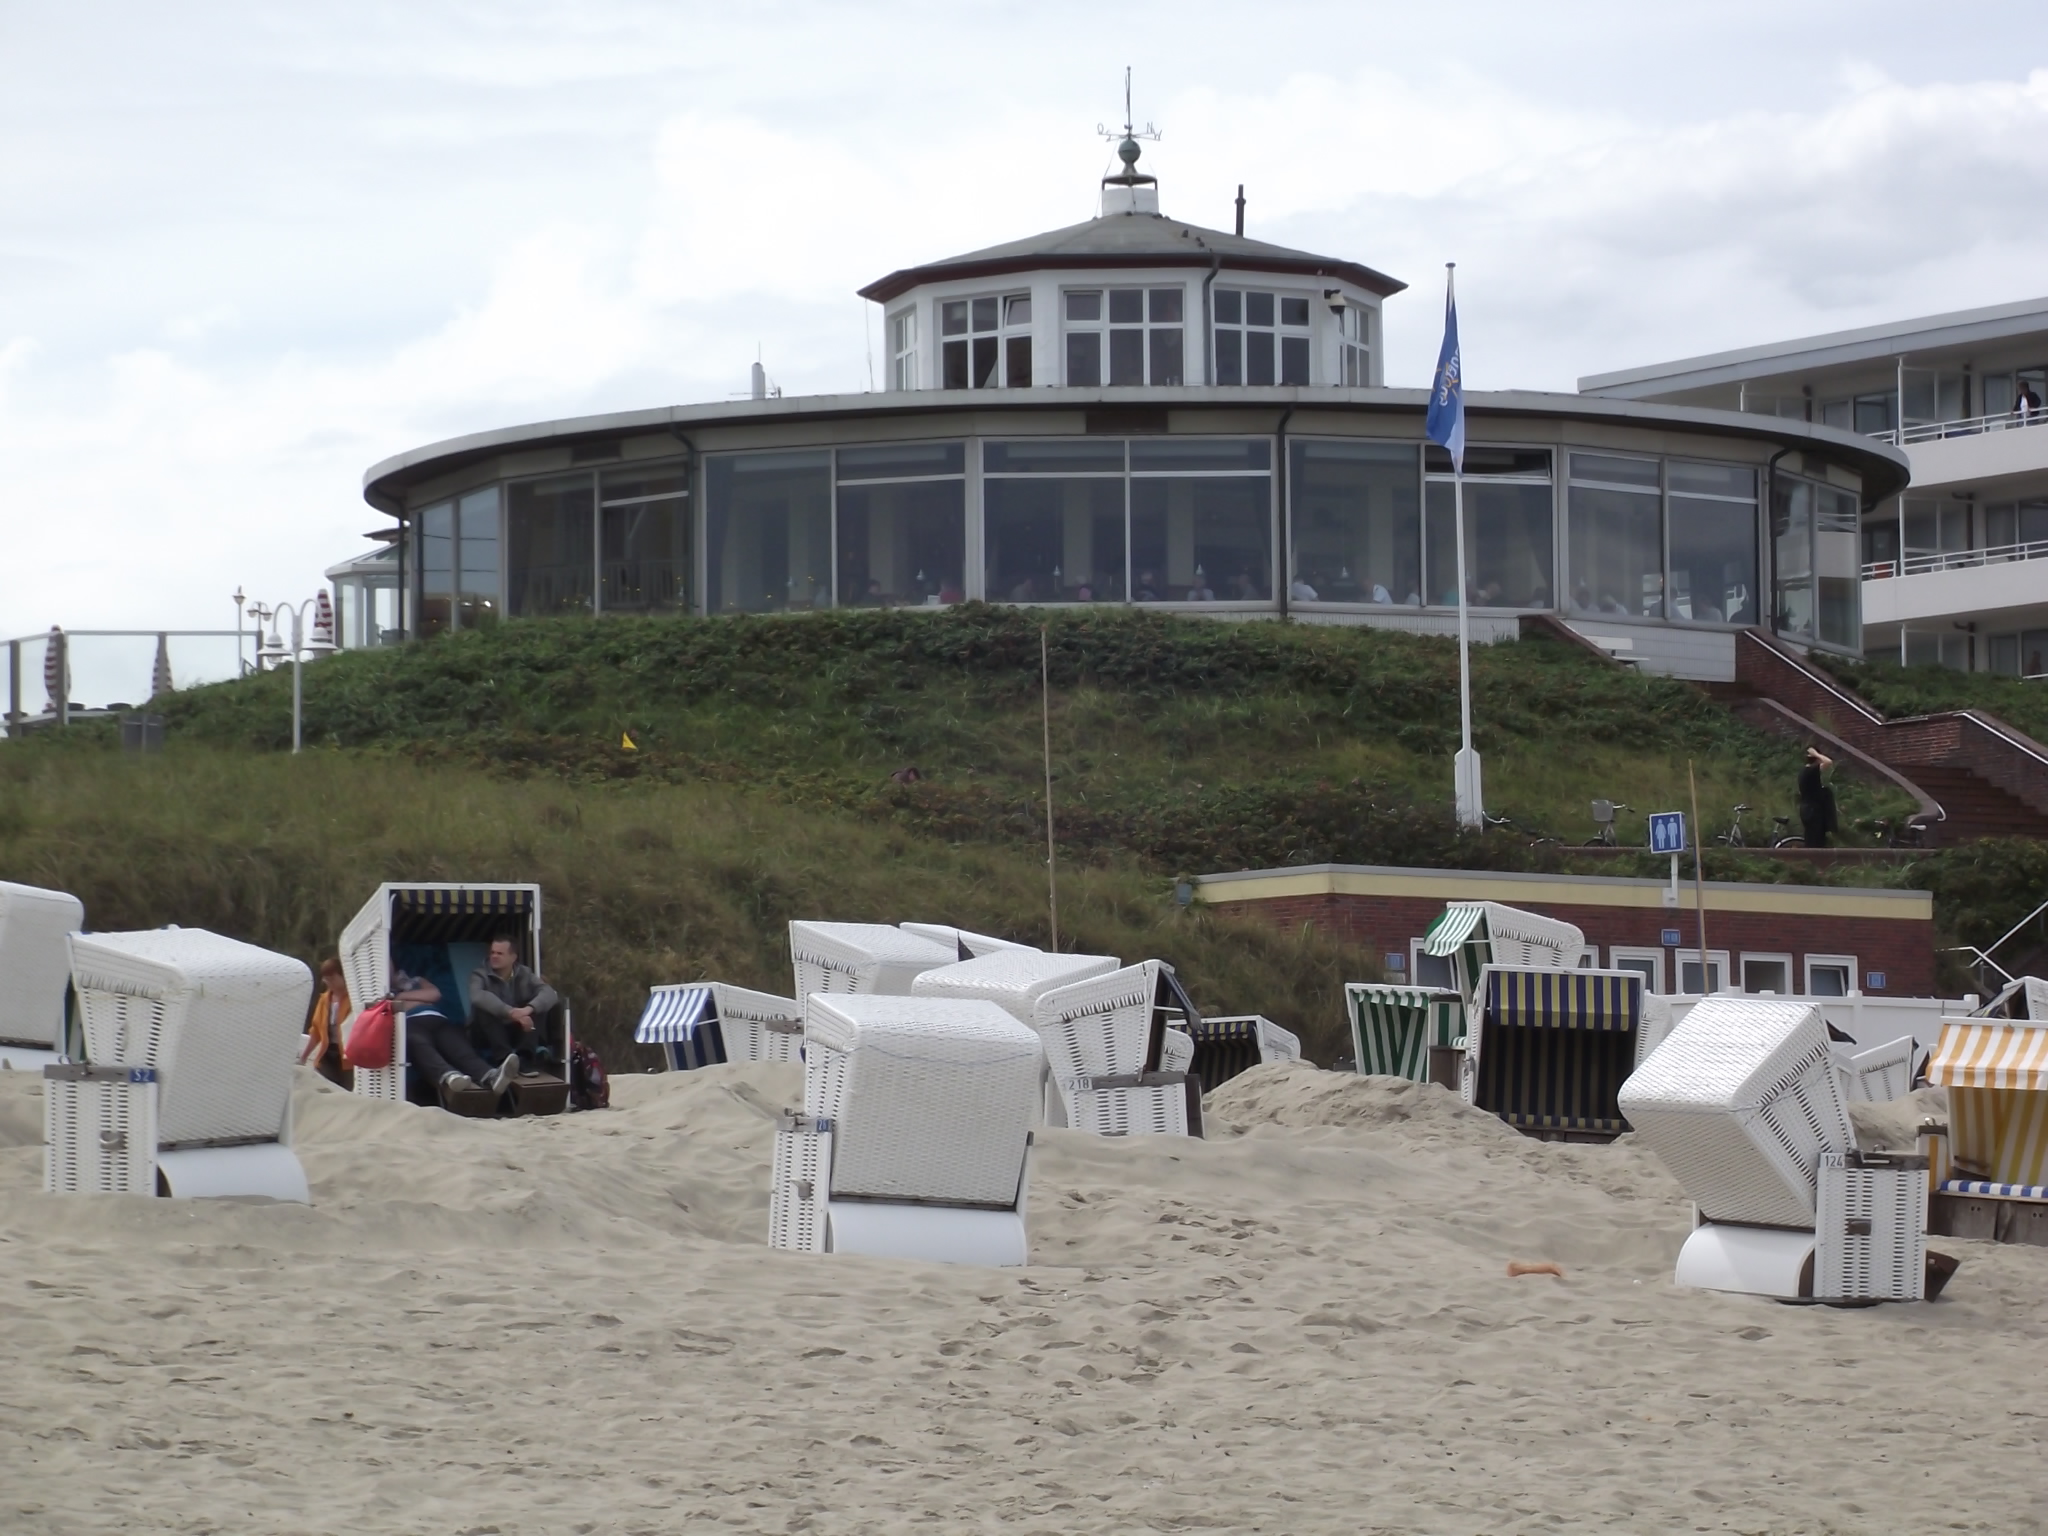 Blick auf das Cafe Pudding vom Strand aus gesehen, kurzer Weg vom Strandkorb zum Espresso